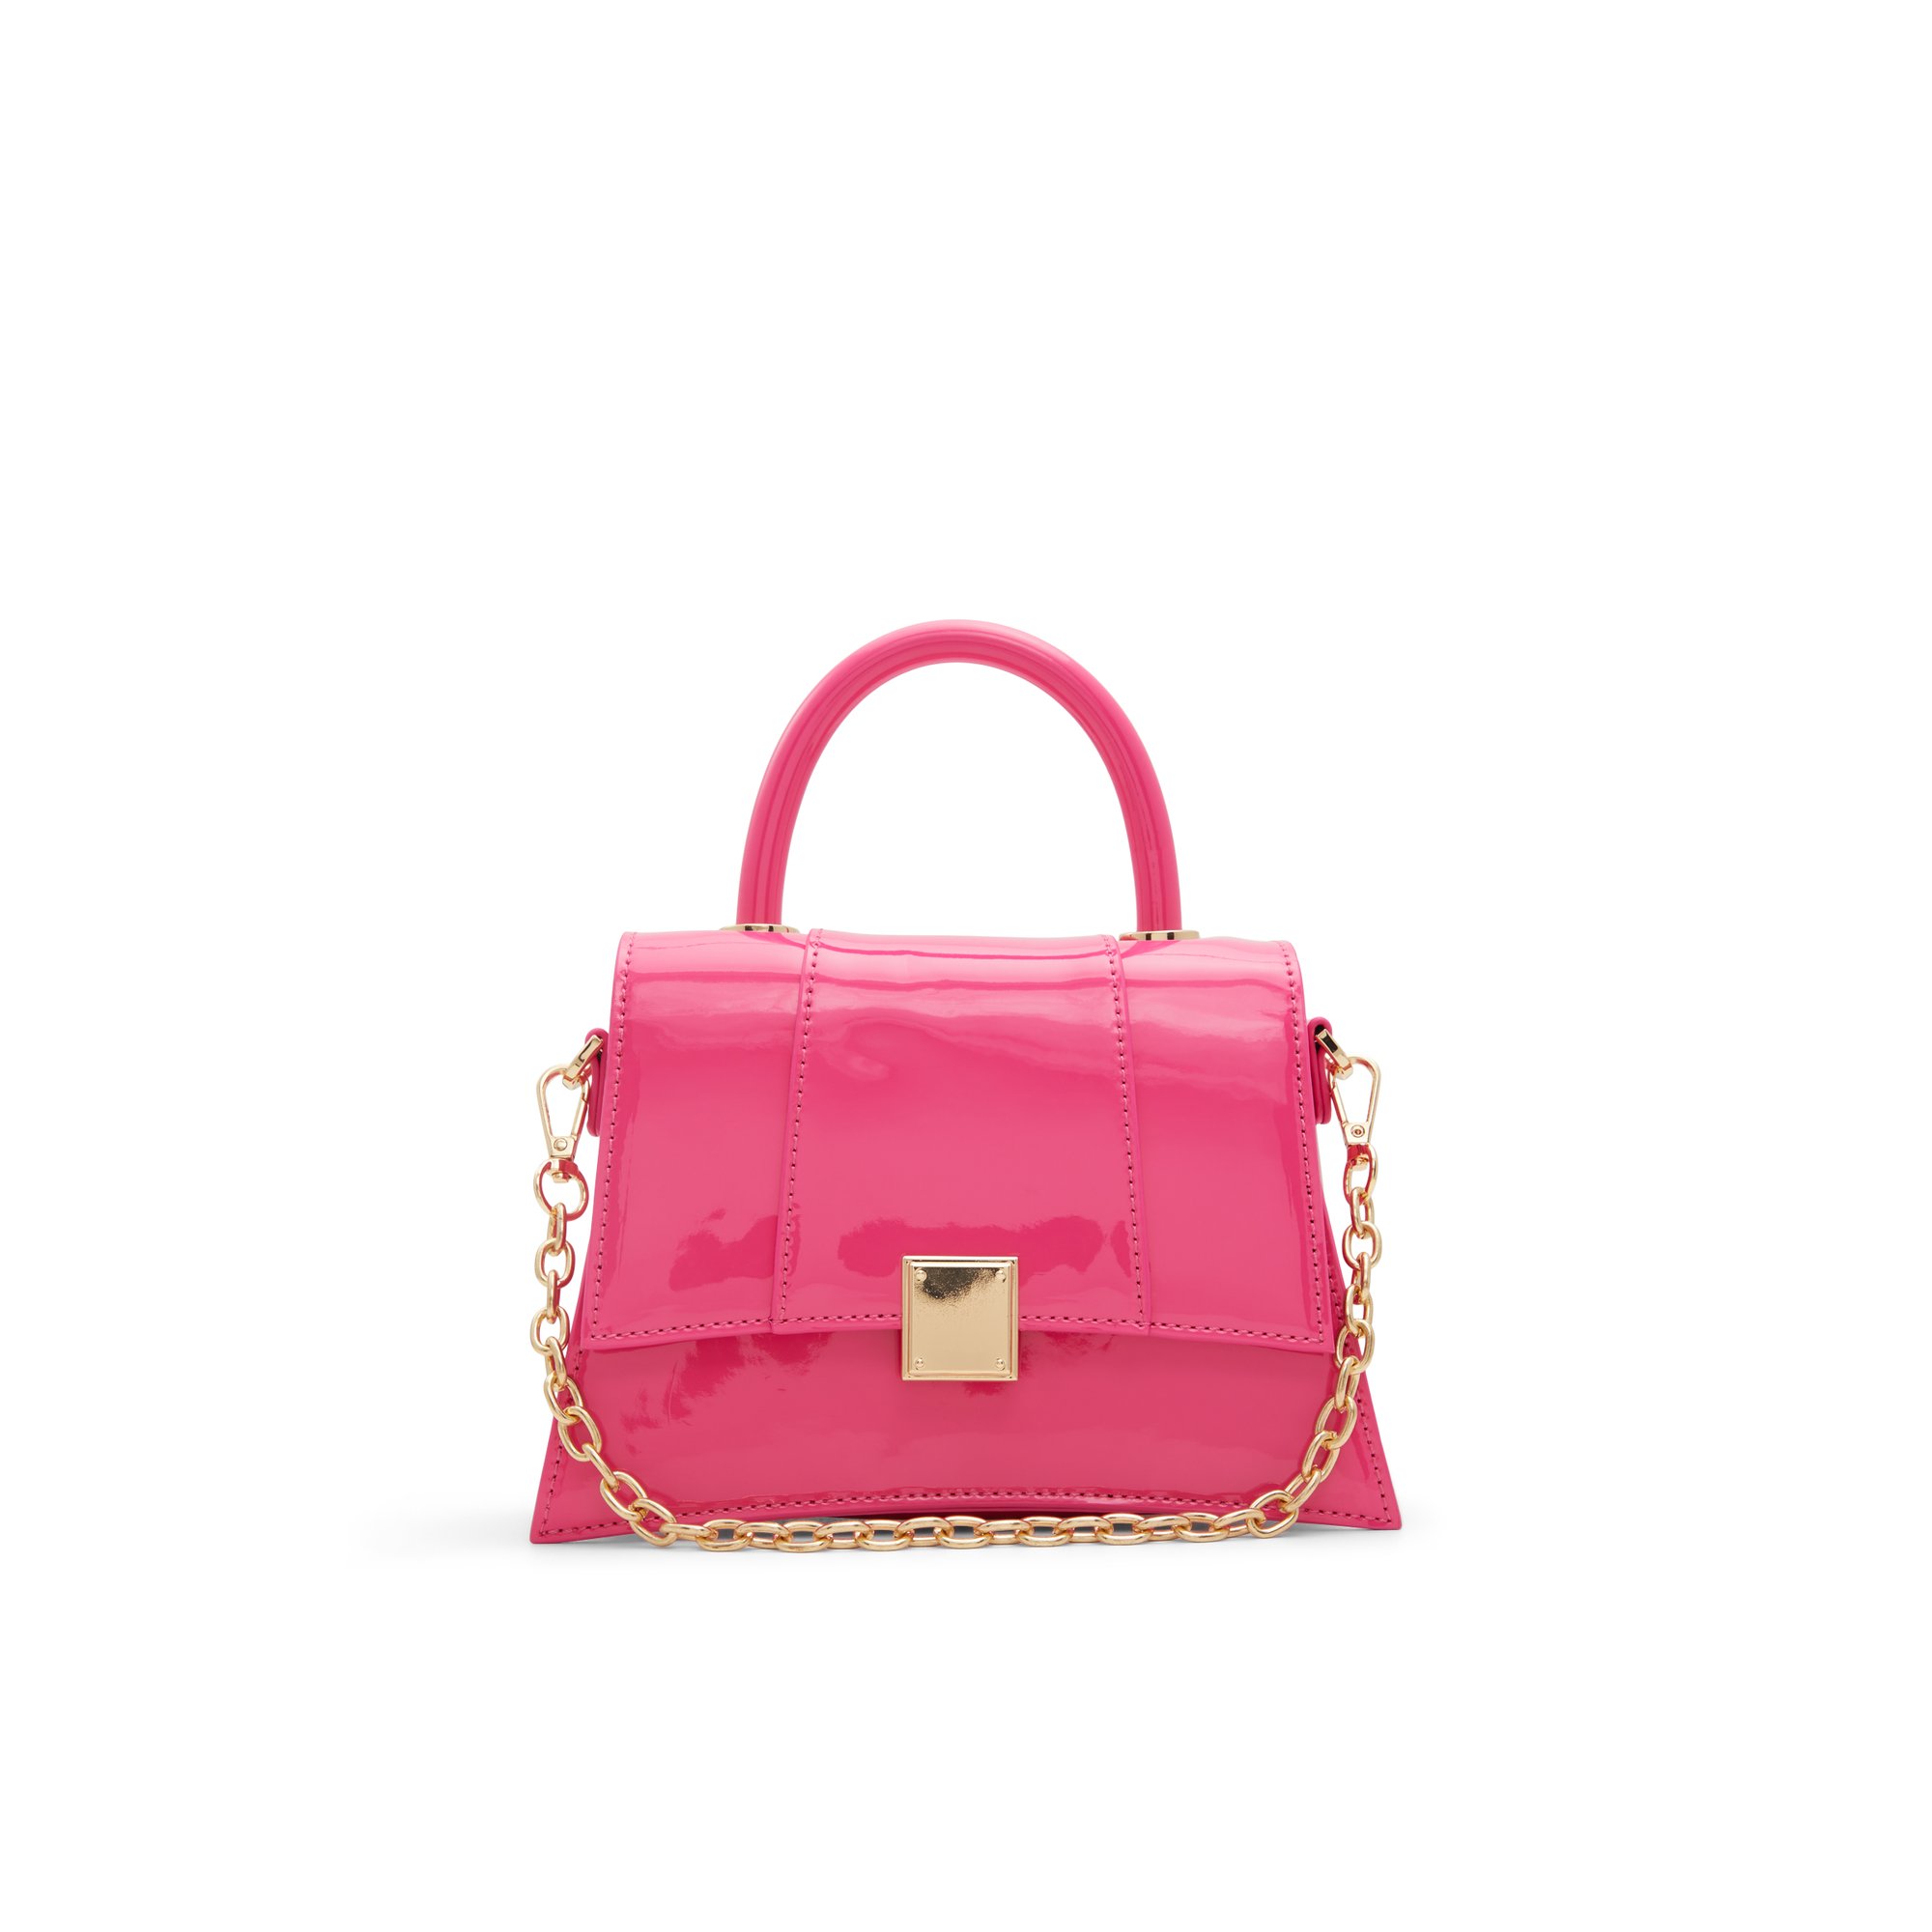 ALDO Kindraax - Women's Handbags Top Handle - Pink